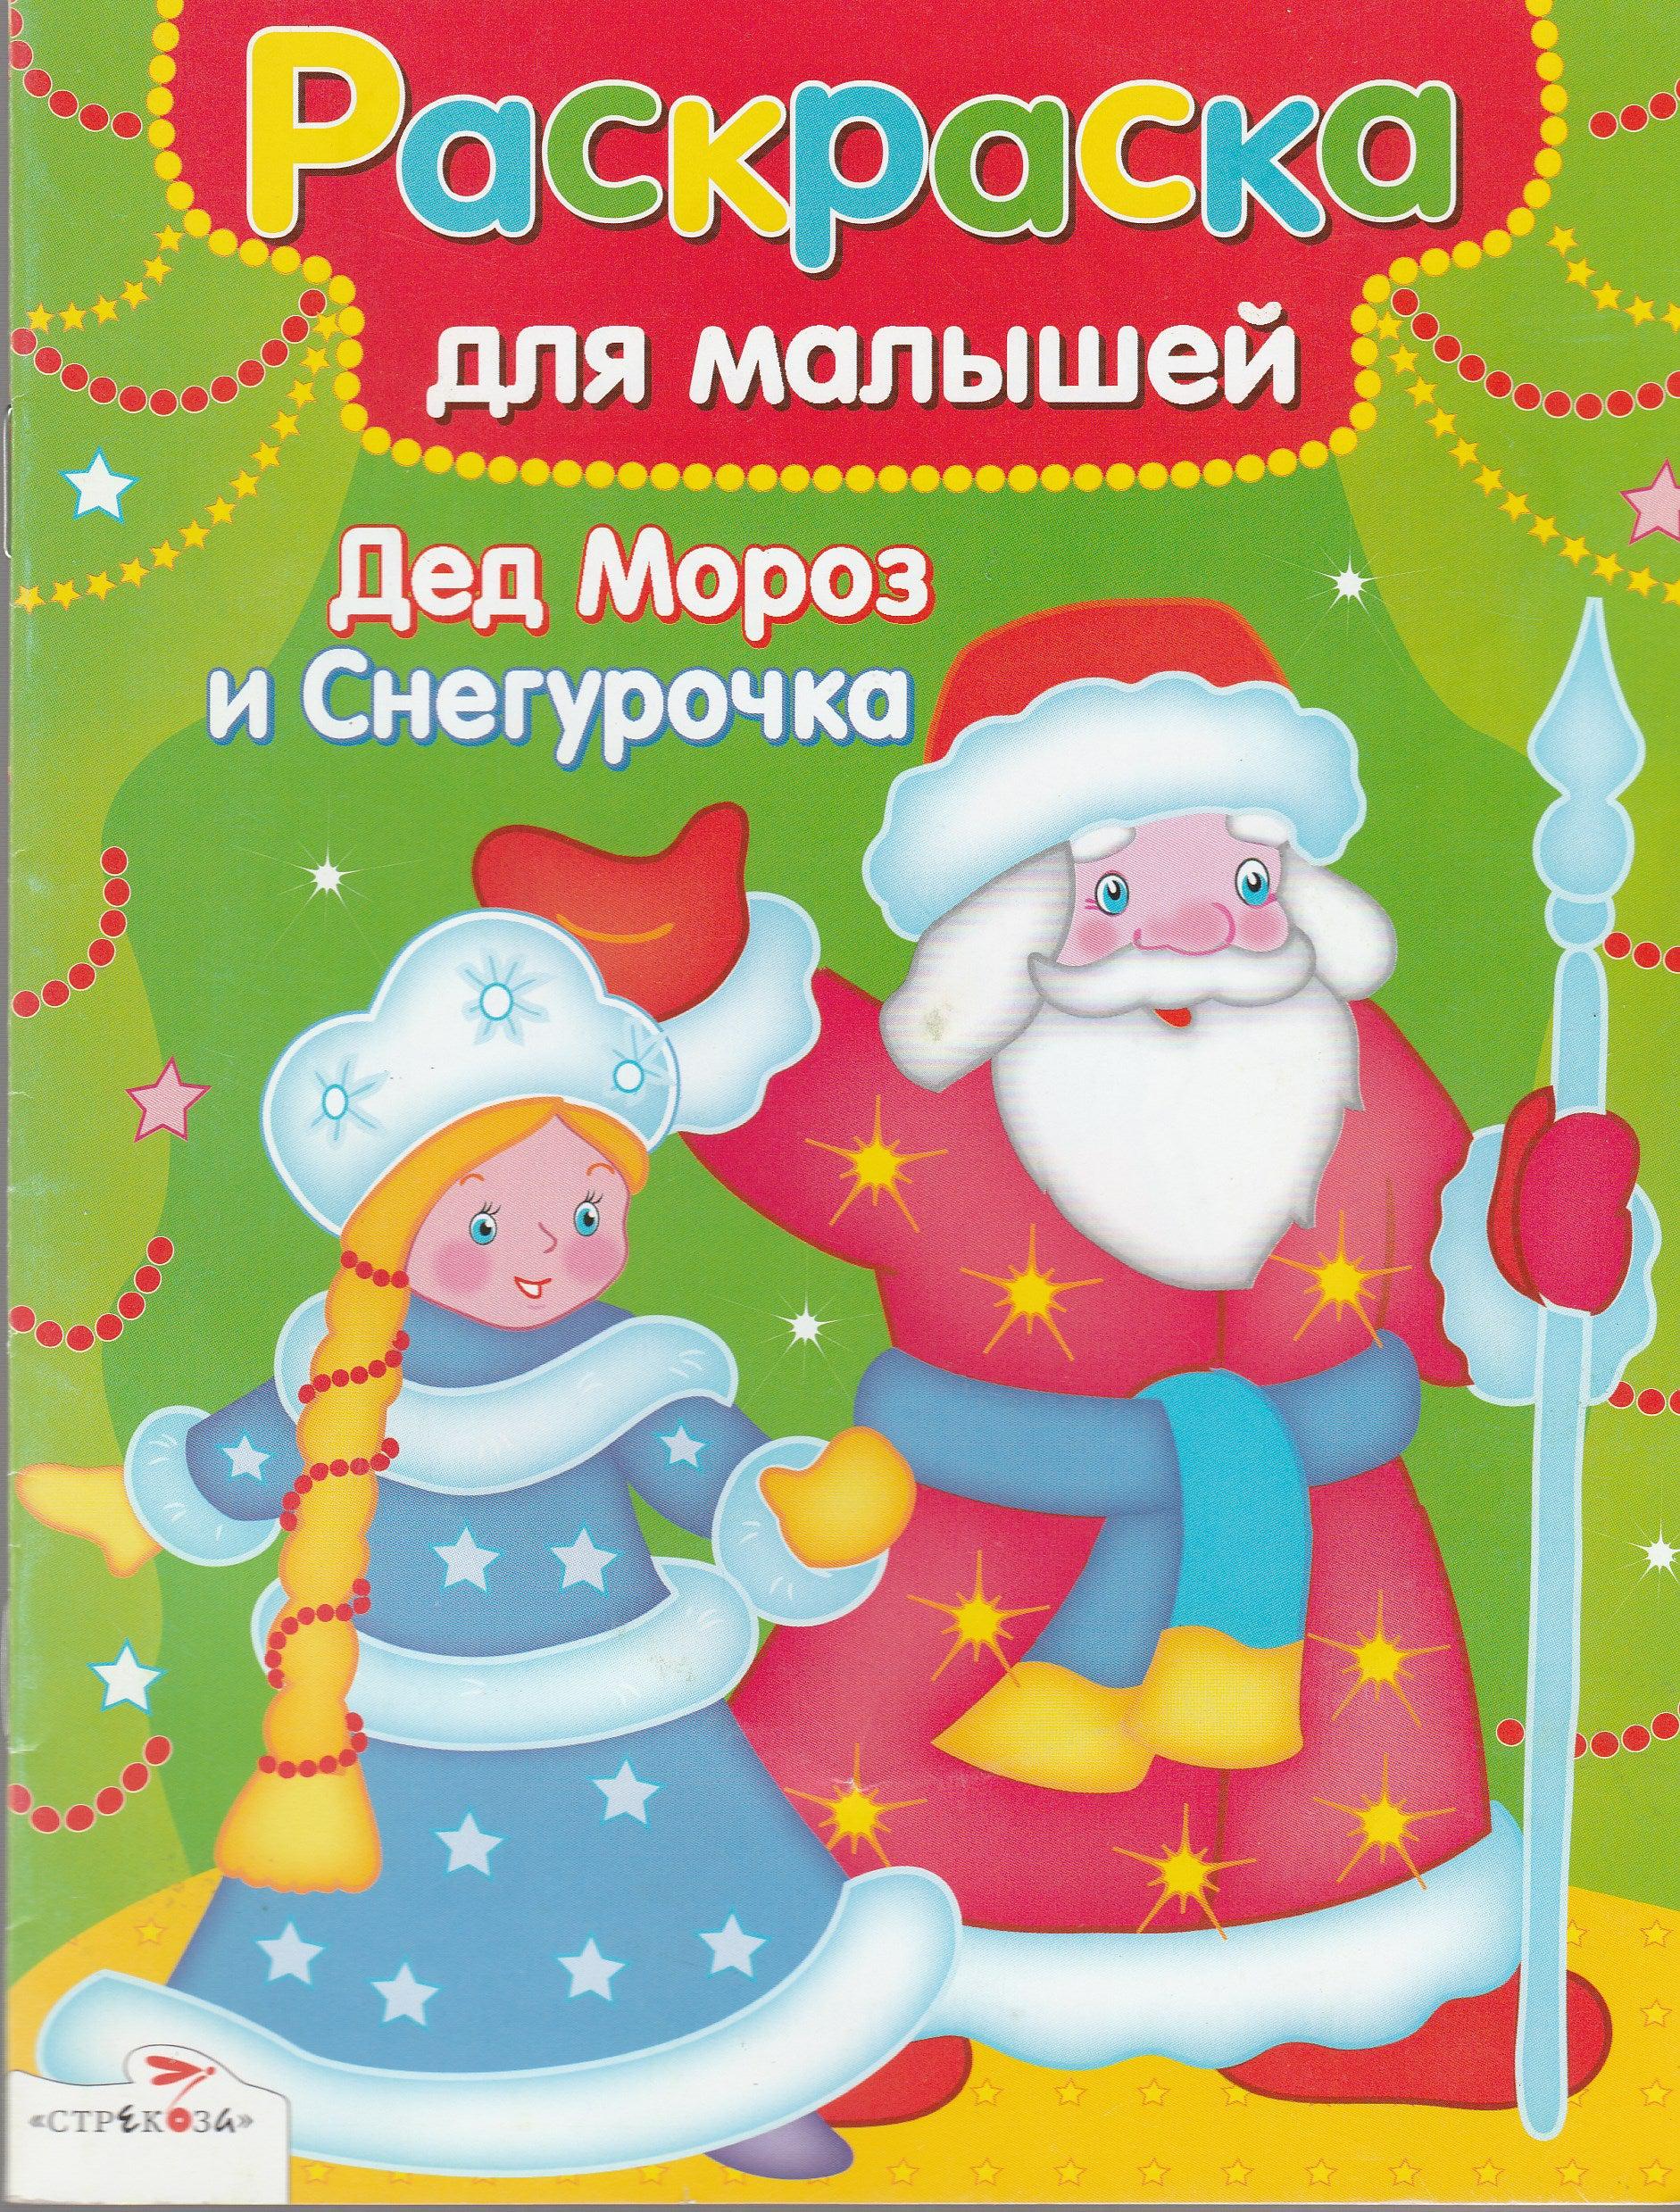 Дед Мороз, Снегурочка, Снеговик, елочка - ДВУСТОРОННИЕ